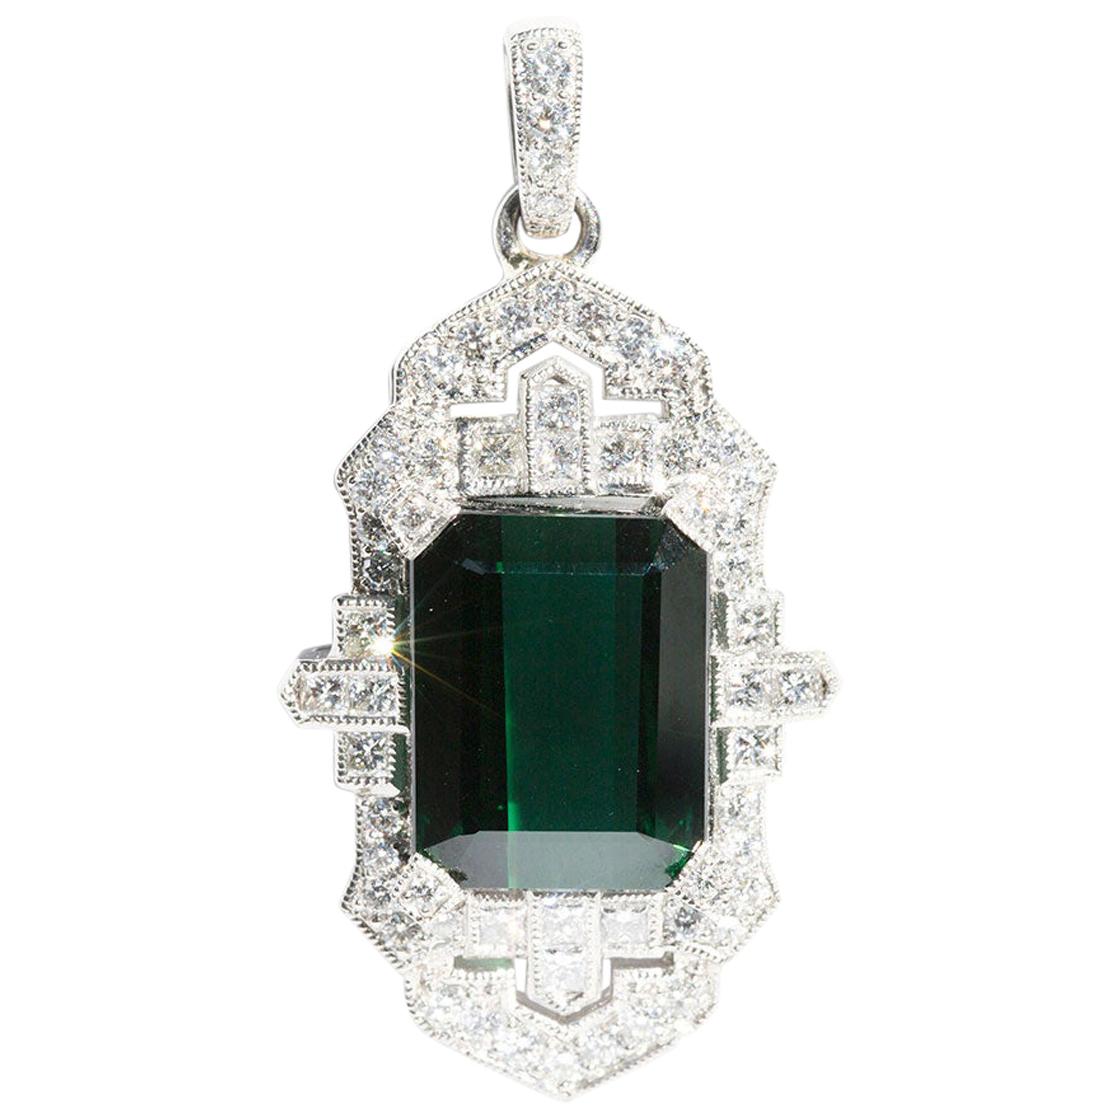 11.84 Carat Green Emerald Cut Tourmaline and 1.40 Carat Diamond Platinum Pendant